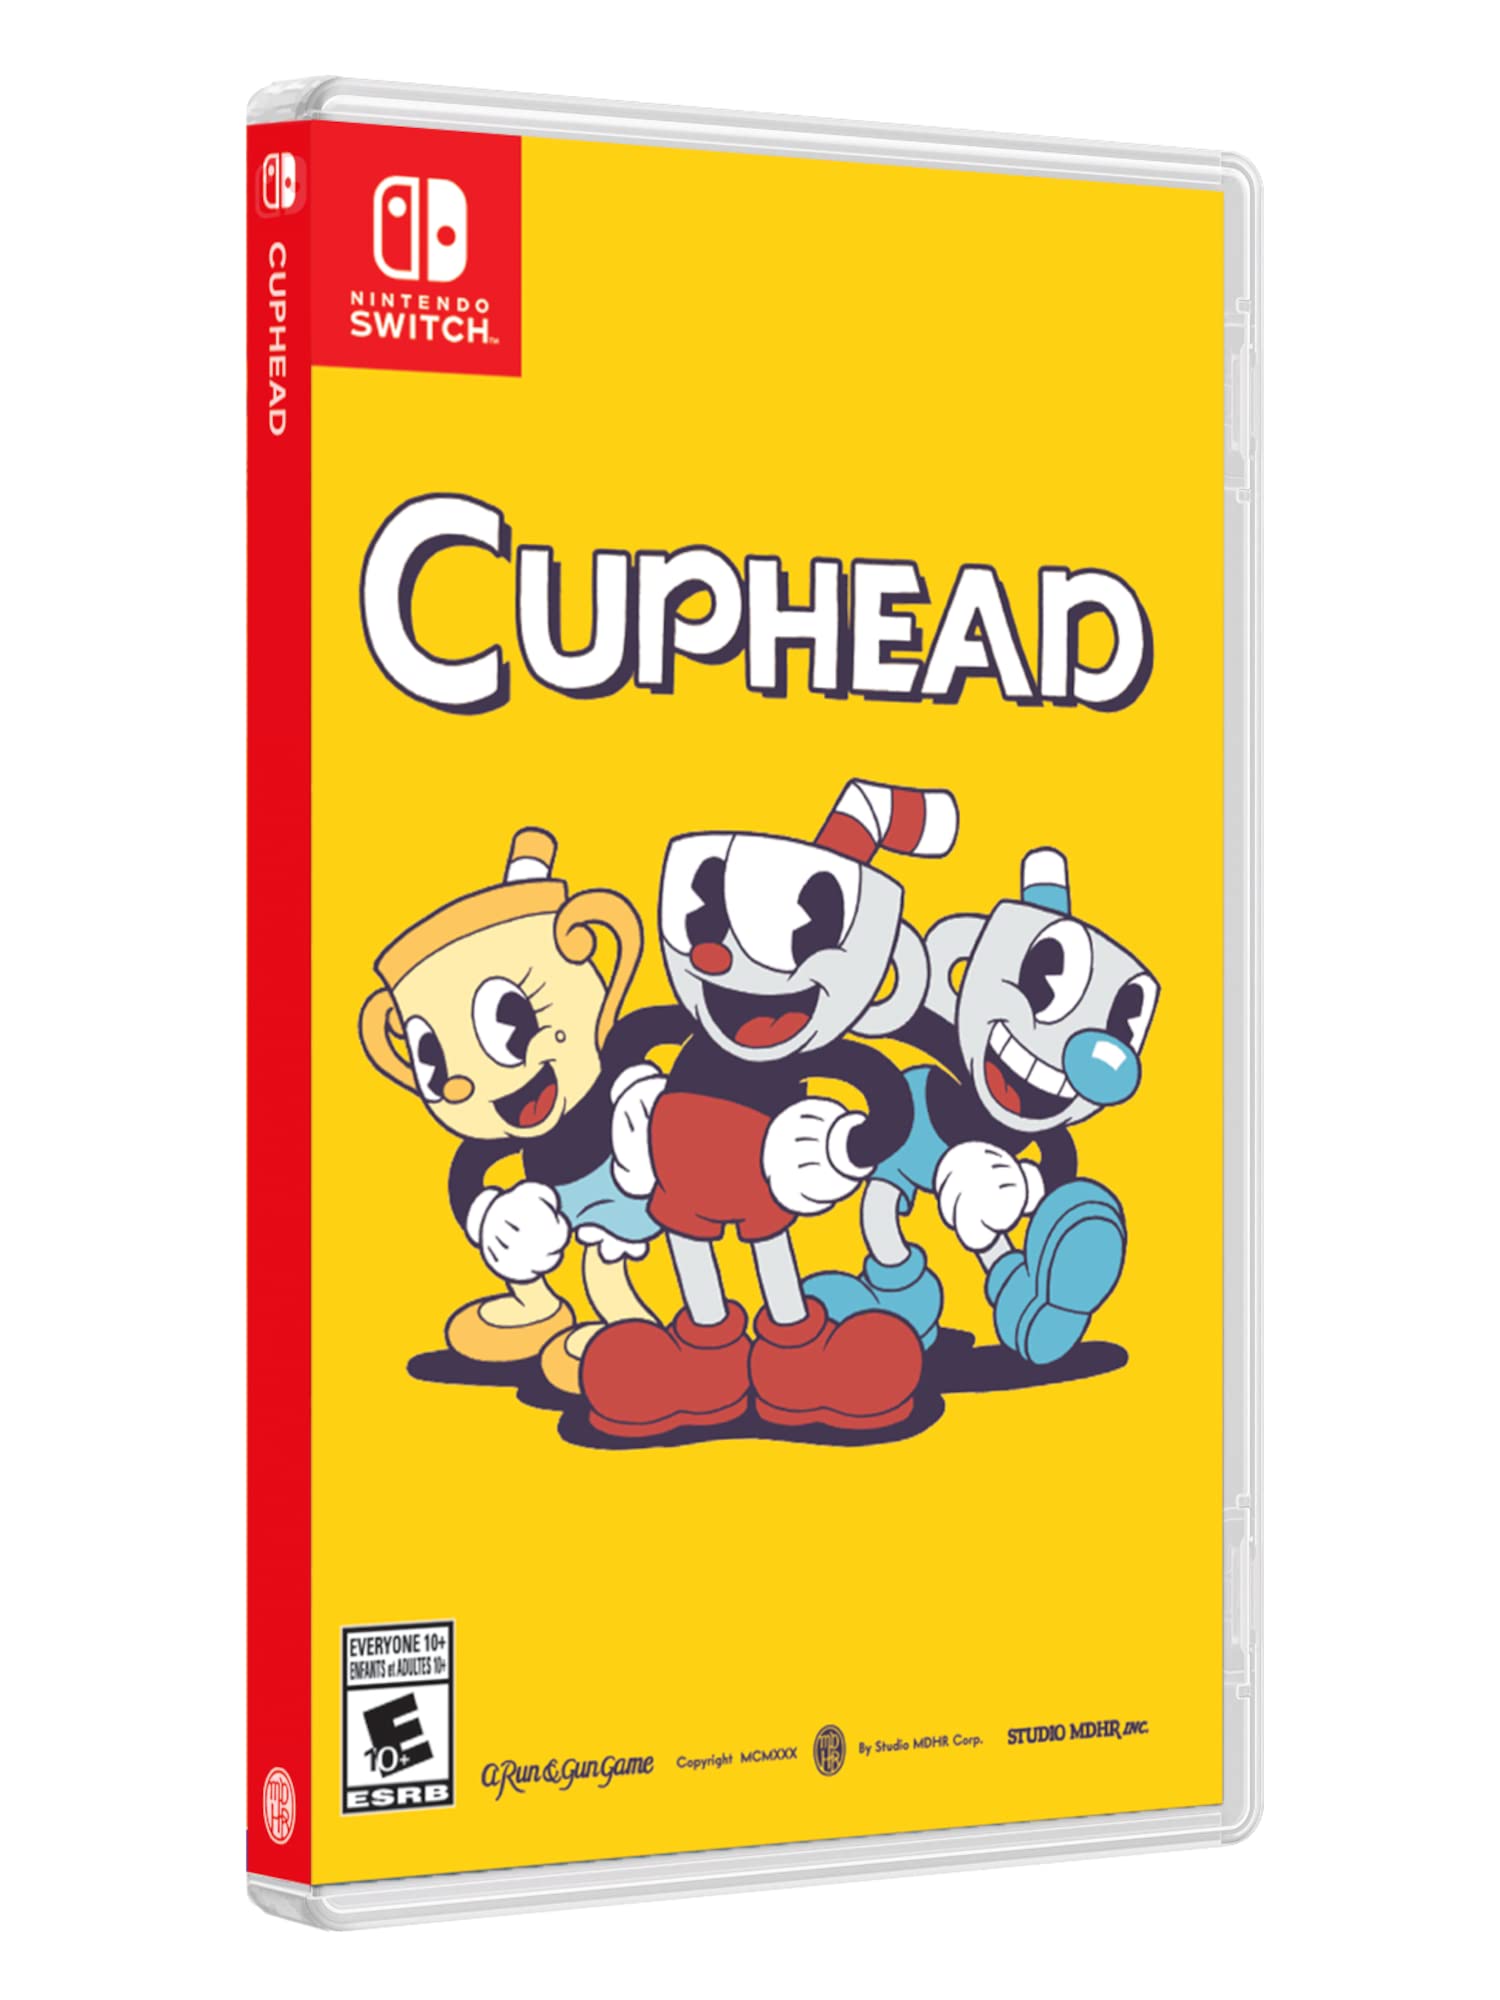 Cuphead - Nintendo Switch - $27.89 on Amazon